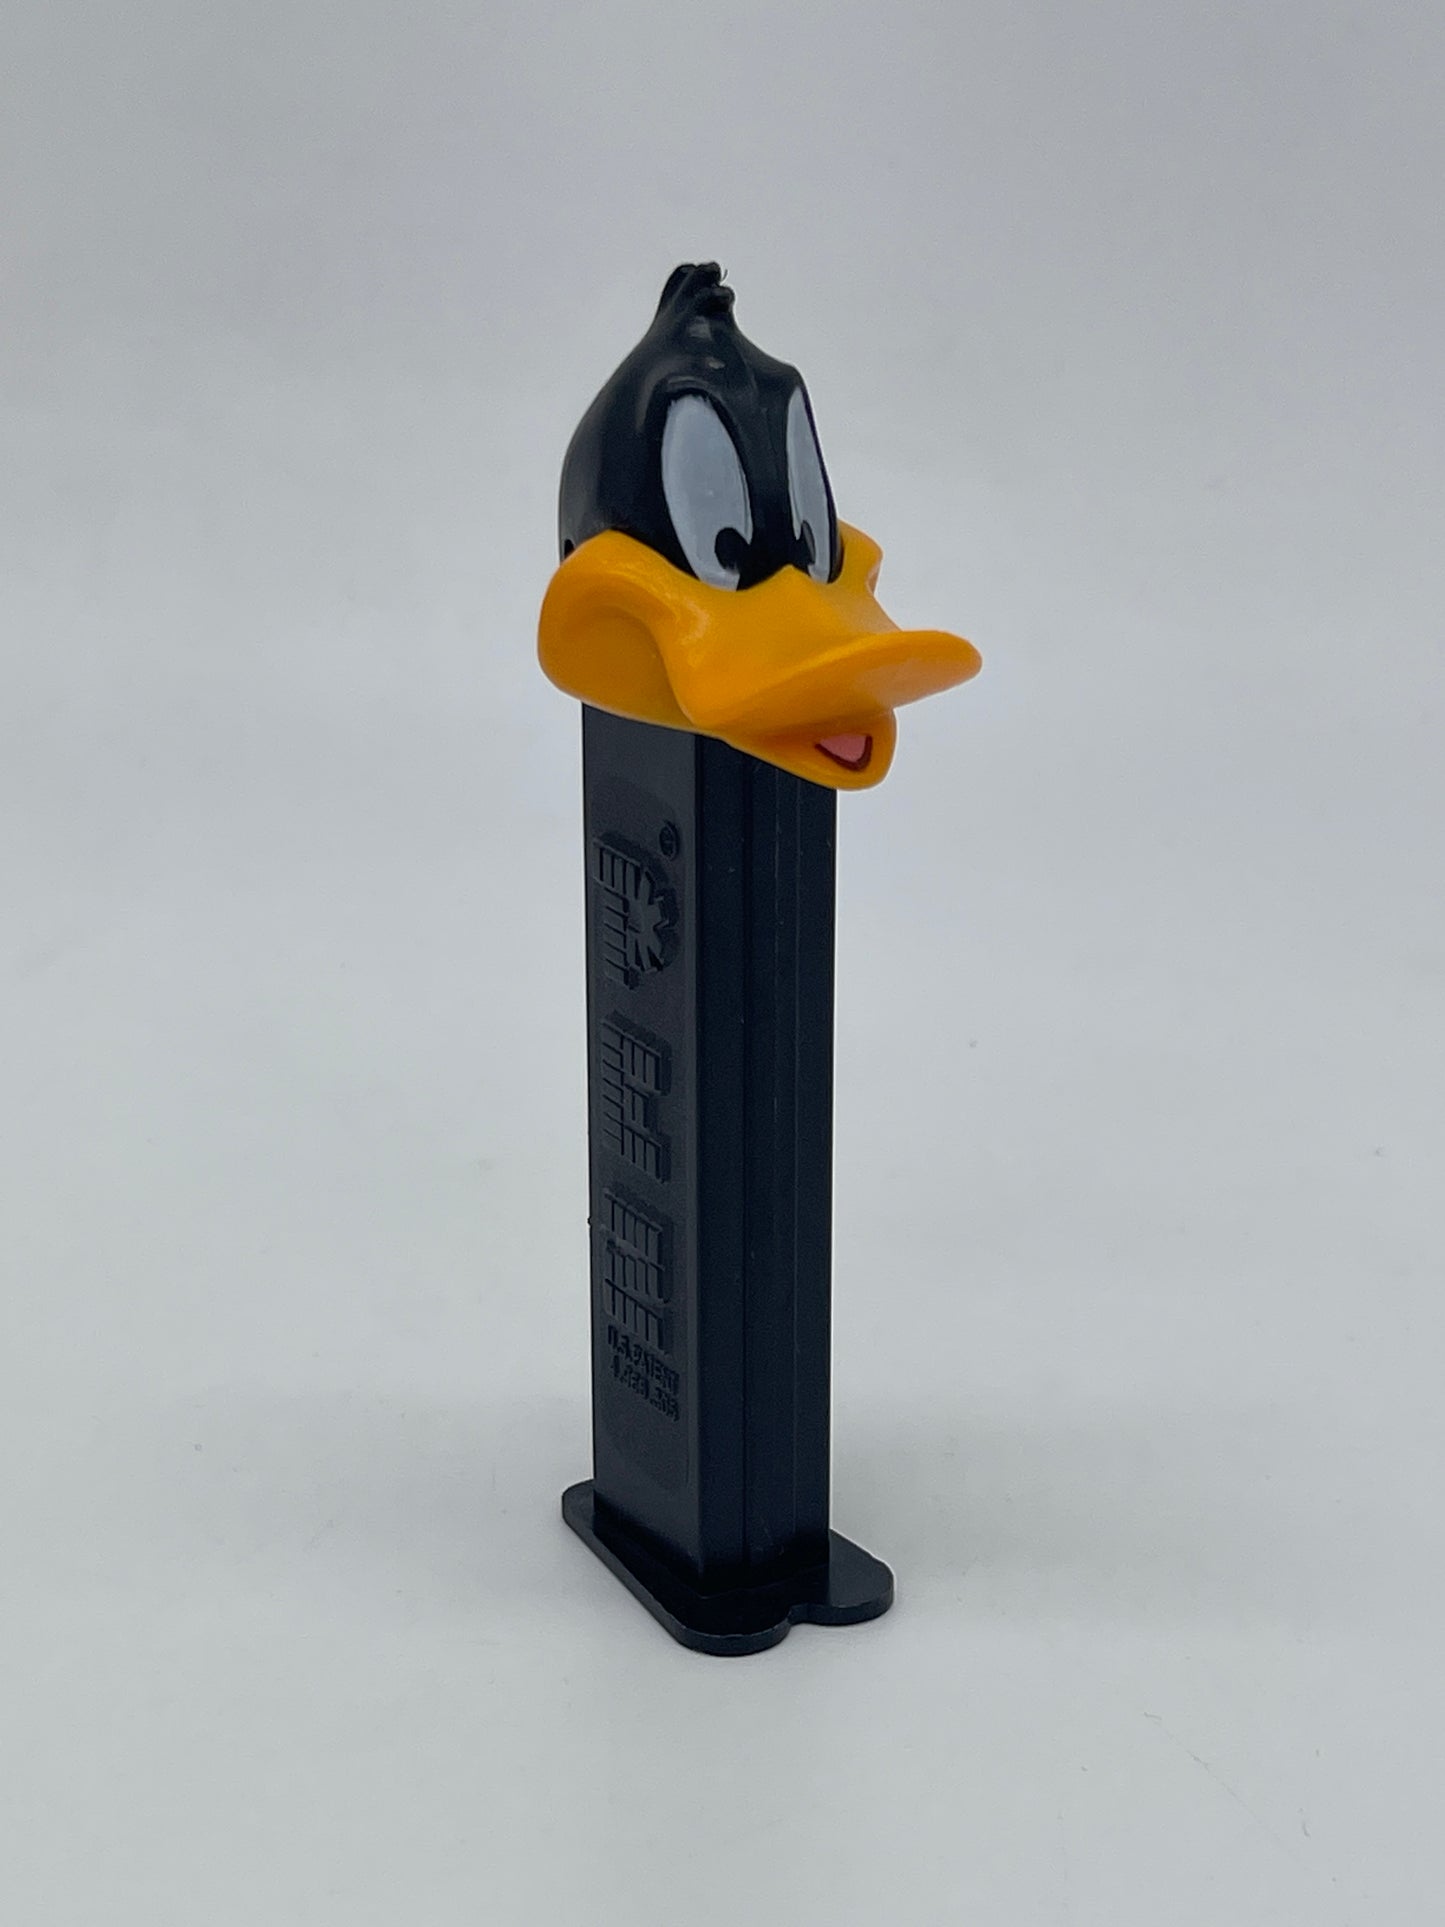 PEZ Spender Vintage "Daffy Duck" Looney Tunes Vintage Warner Brothers (1993)